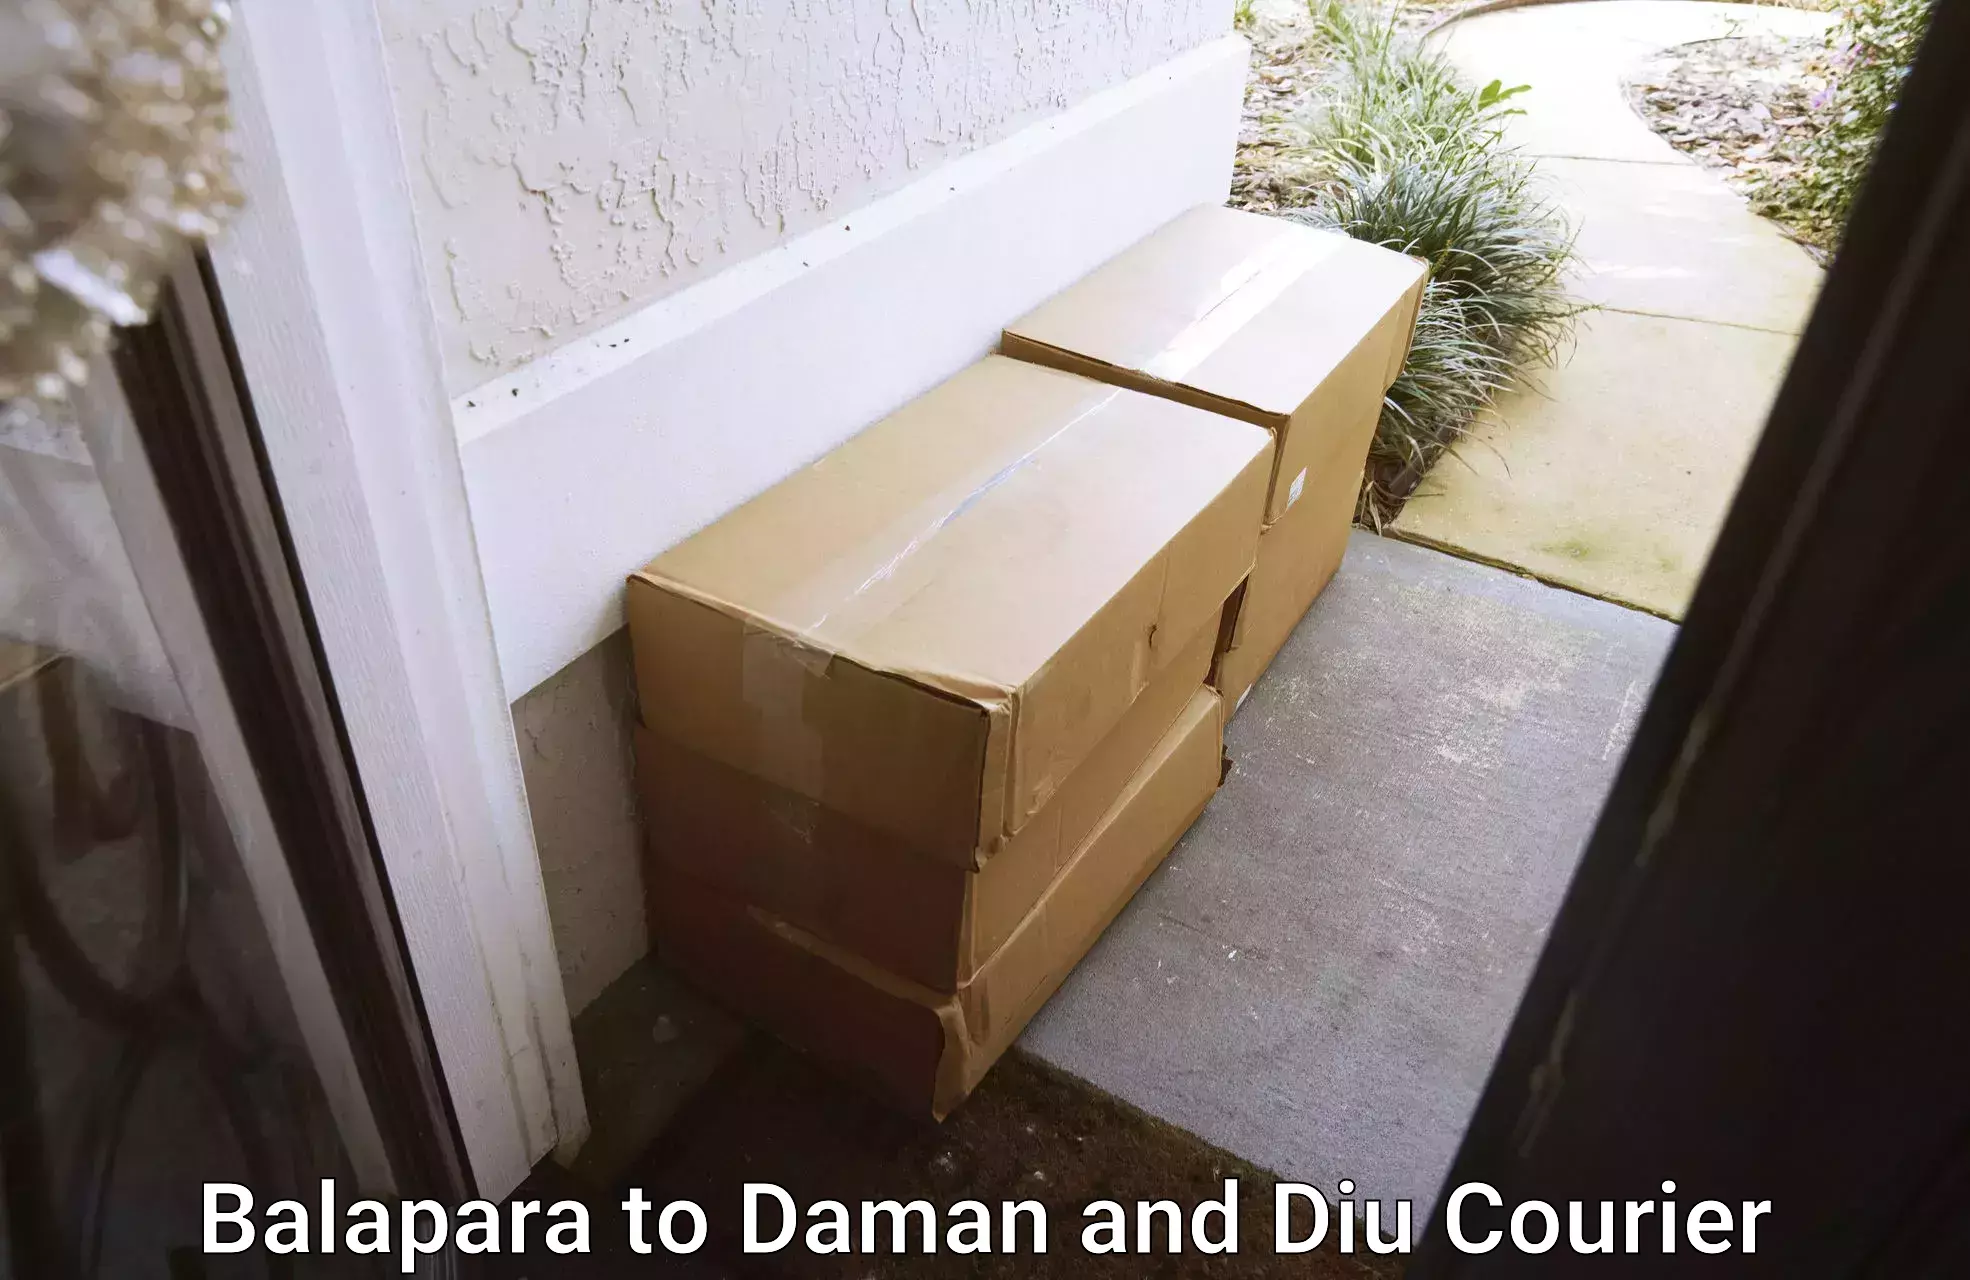 Flexible parcel services Balapara to Daman